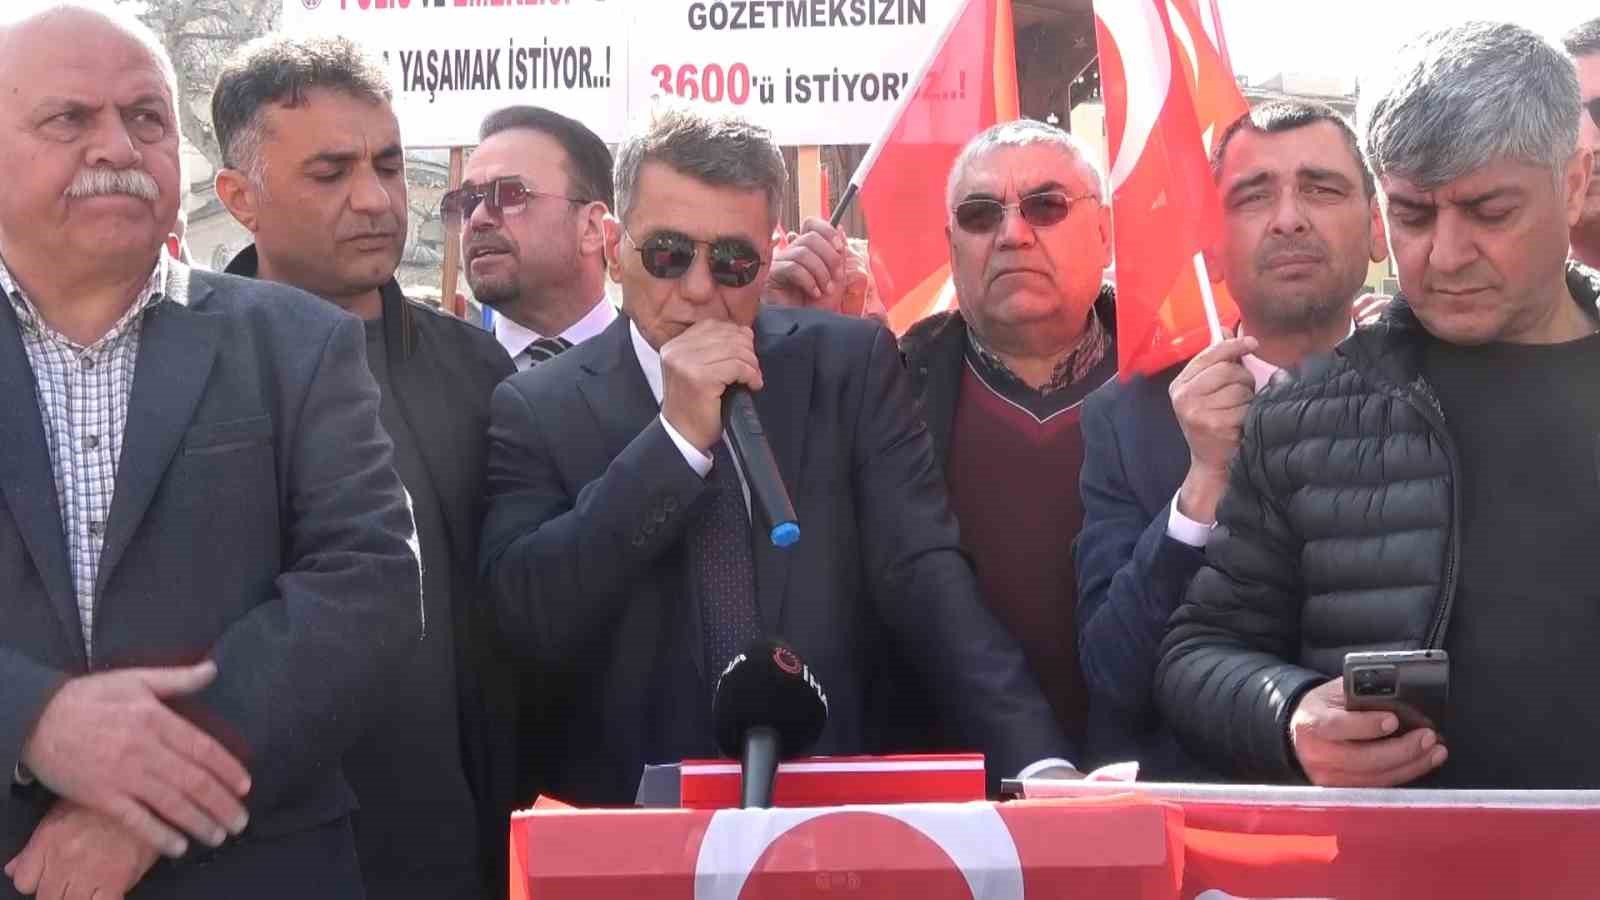 Emekli polisler Bursa’dan seslendi: “3600 ek gösterge istiyoruz”